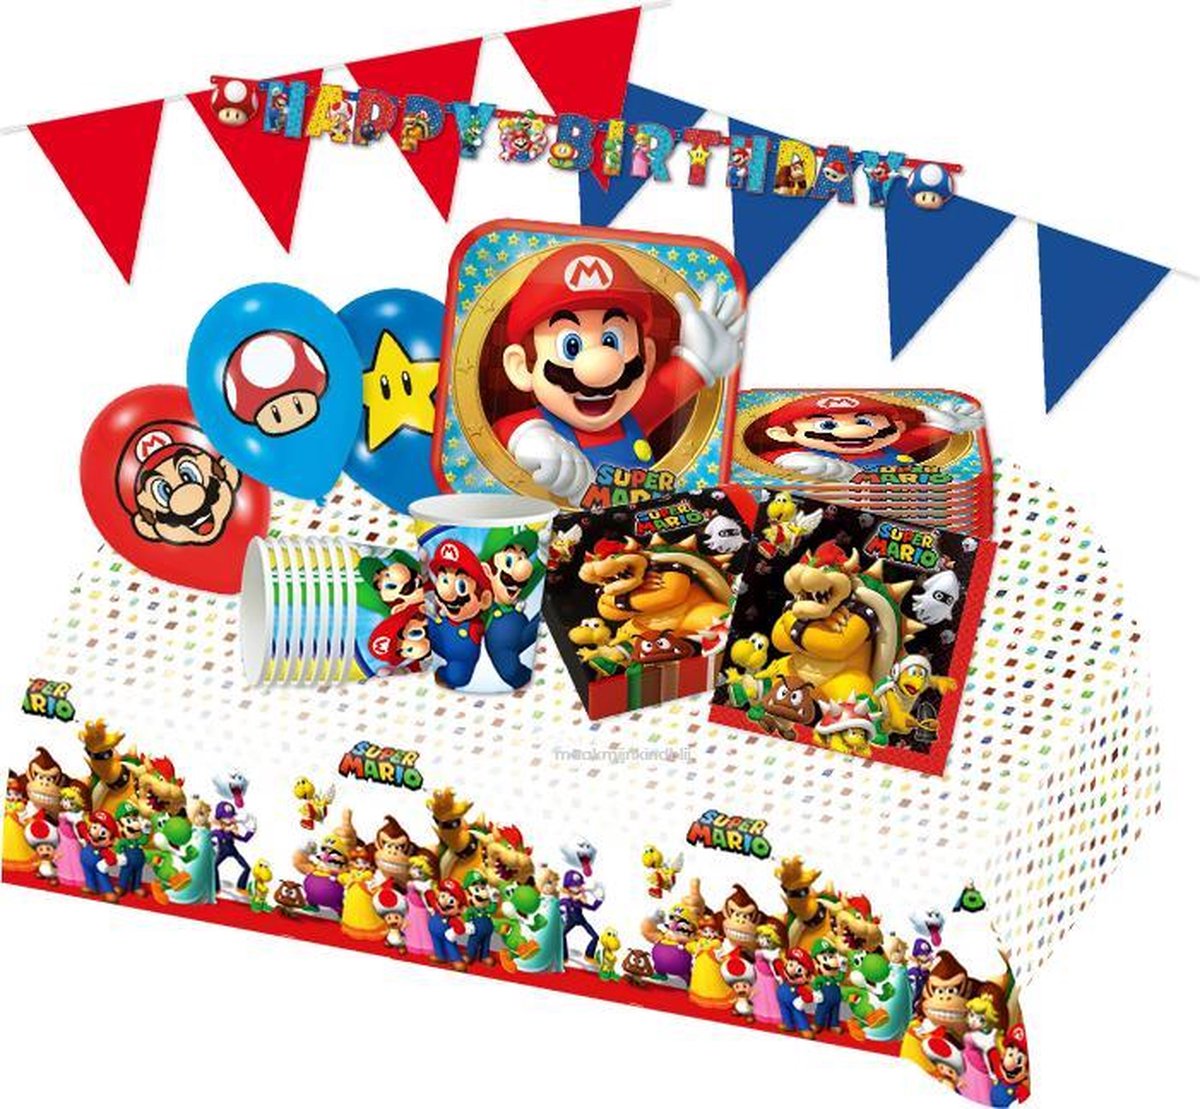 Super Mario feestpakket | kinderfeest voor 8 personen | bol.com